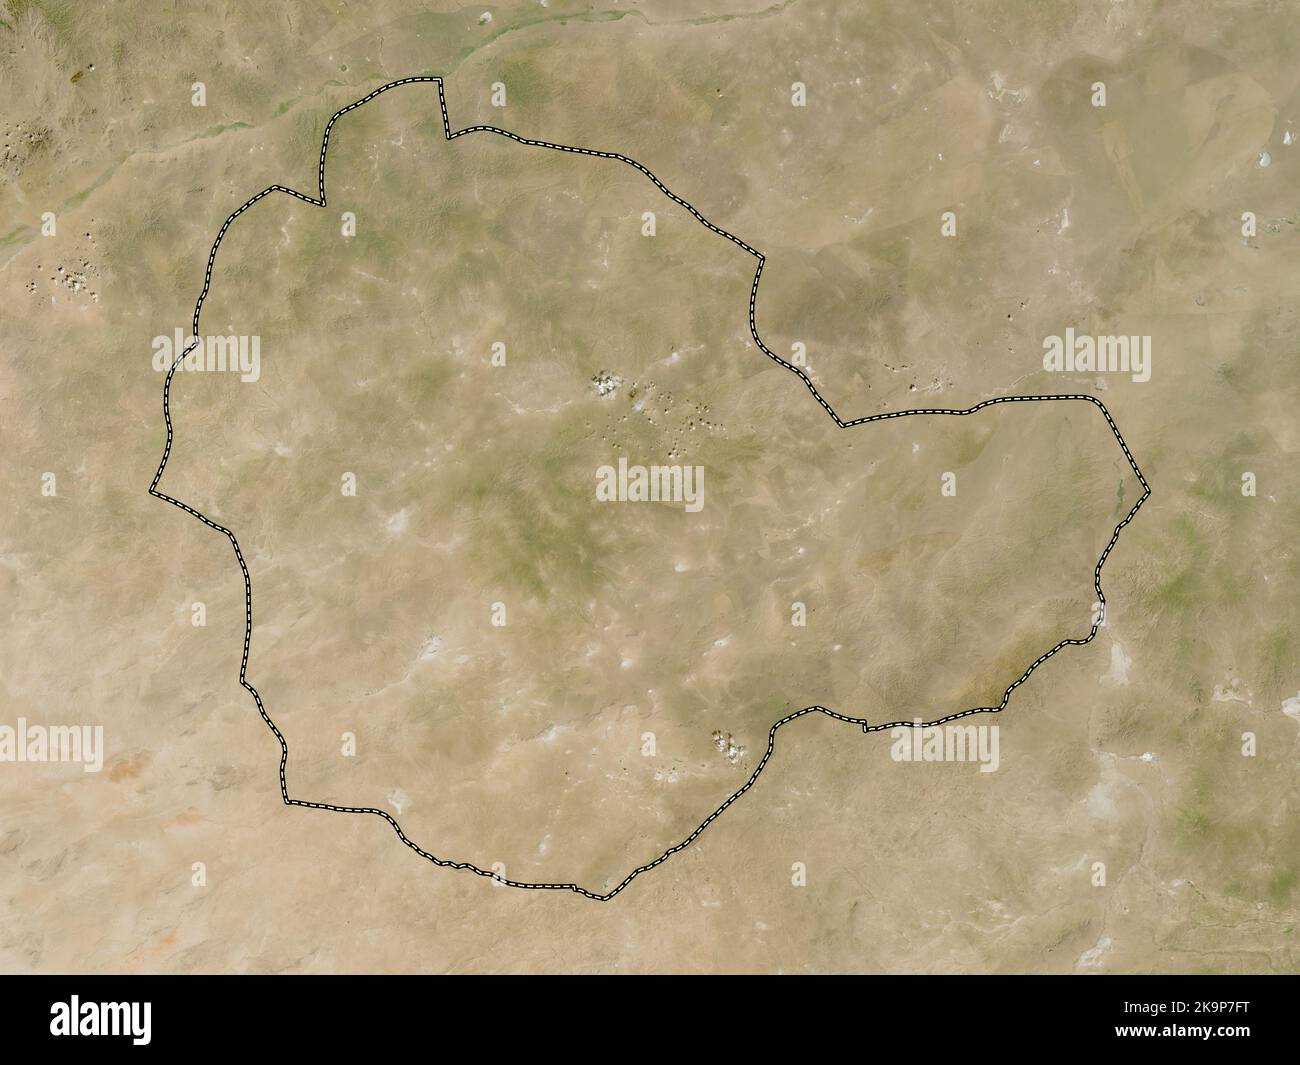 Suhbaatar, province de Mongolie. Carte satellite basse résolution Banque D'Images